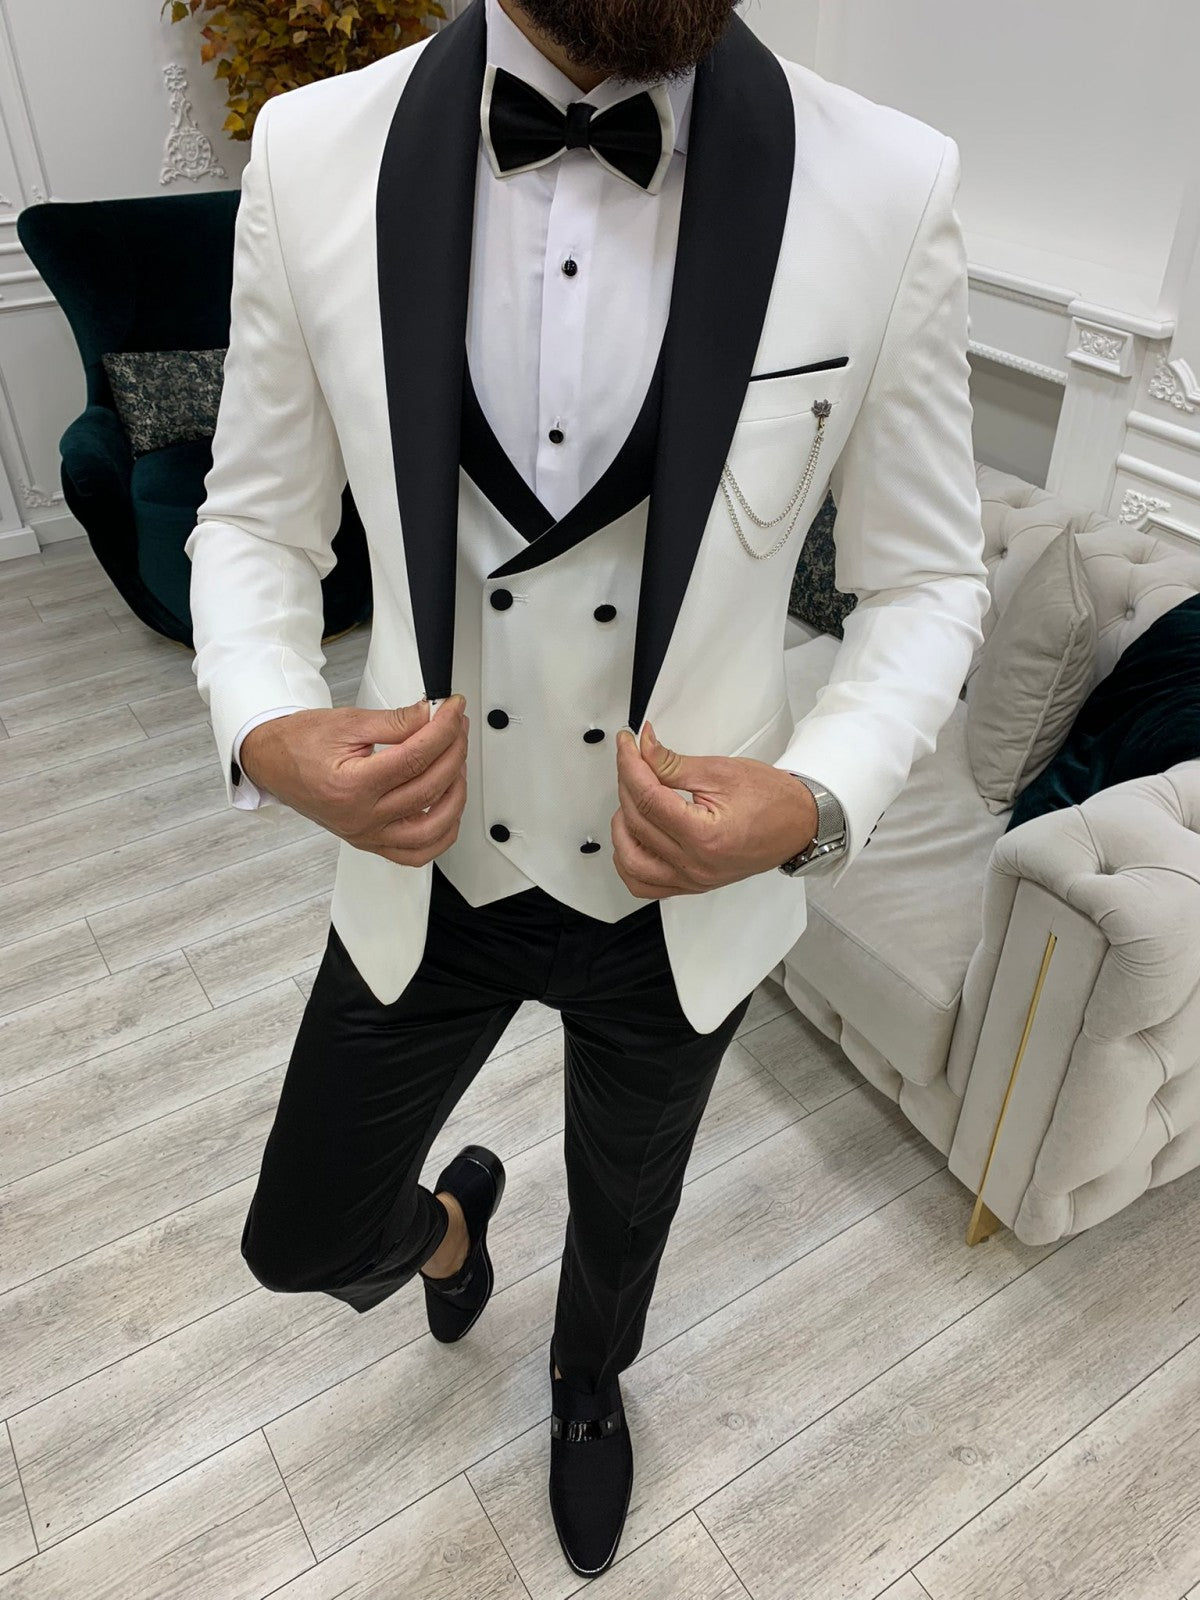 Men's White Suit